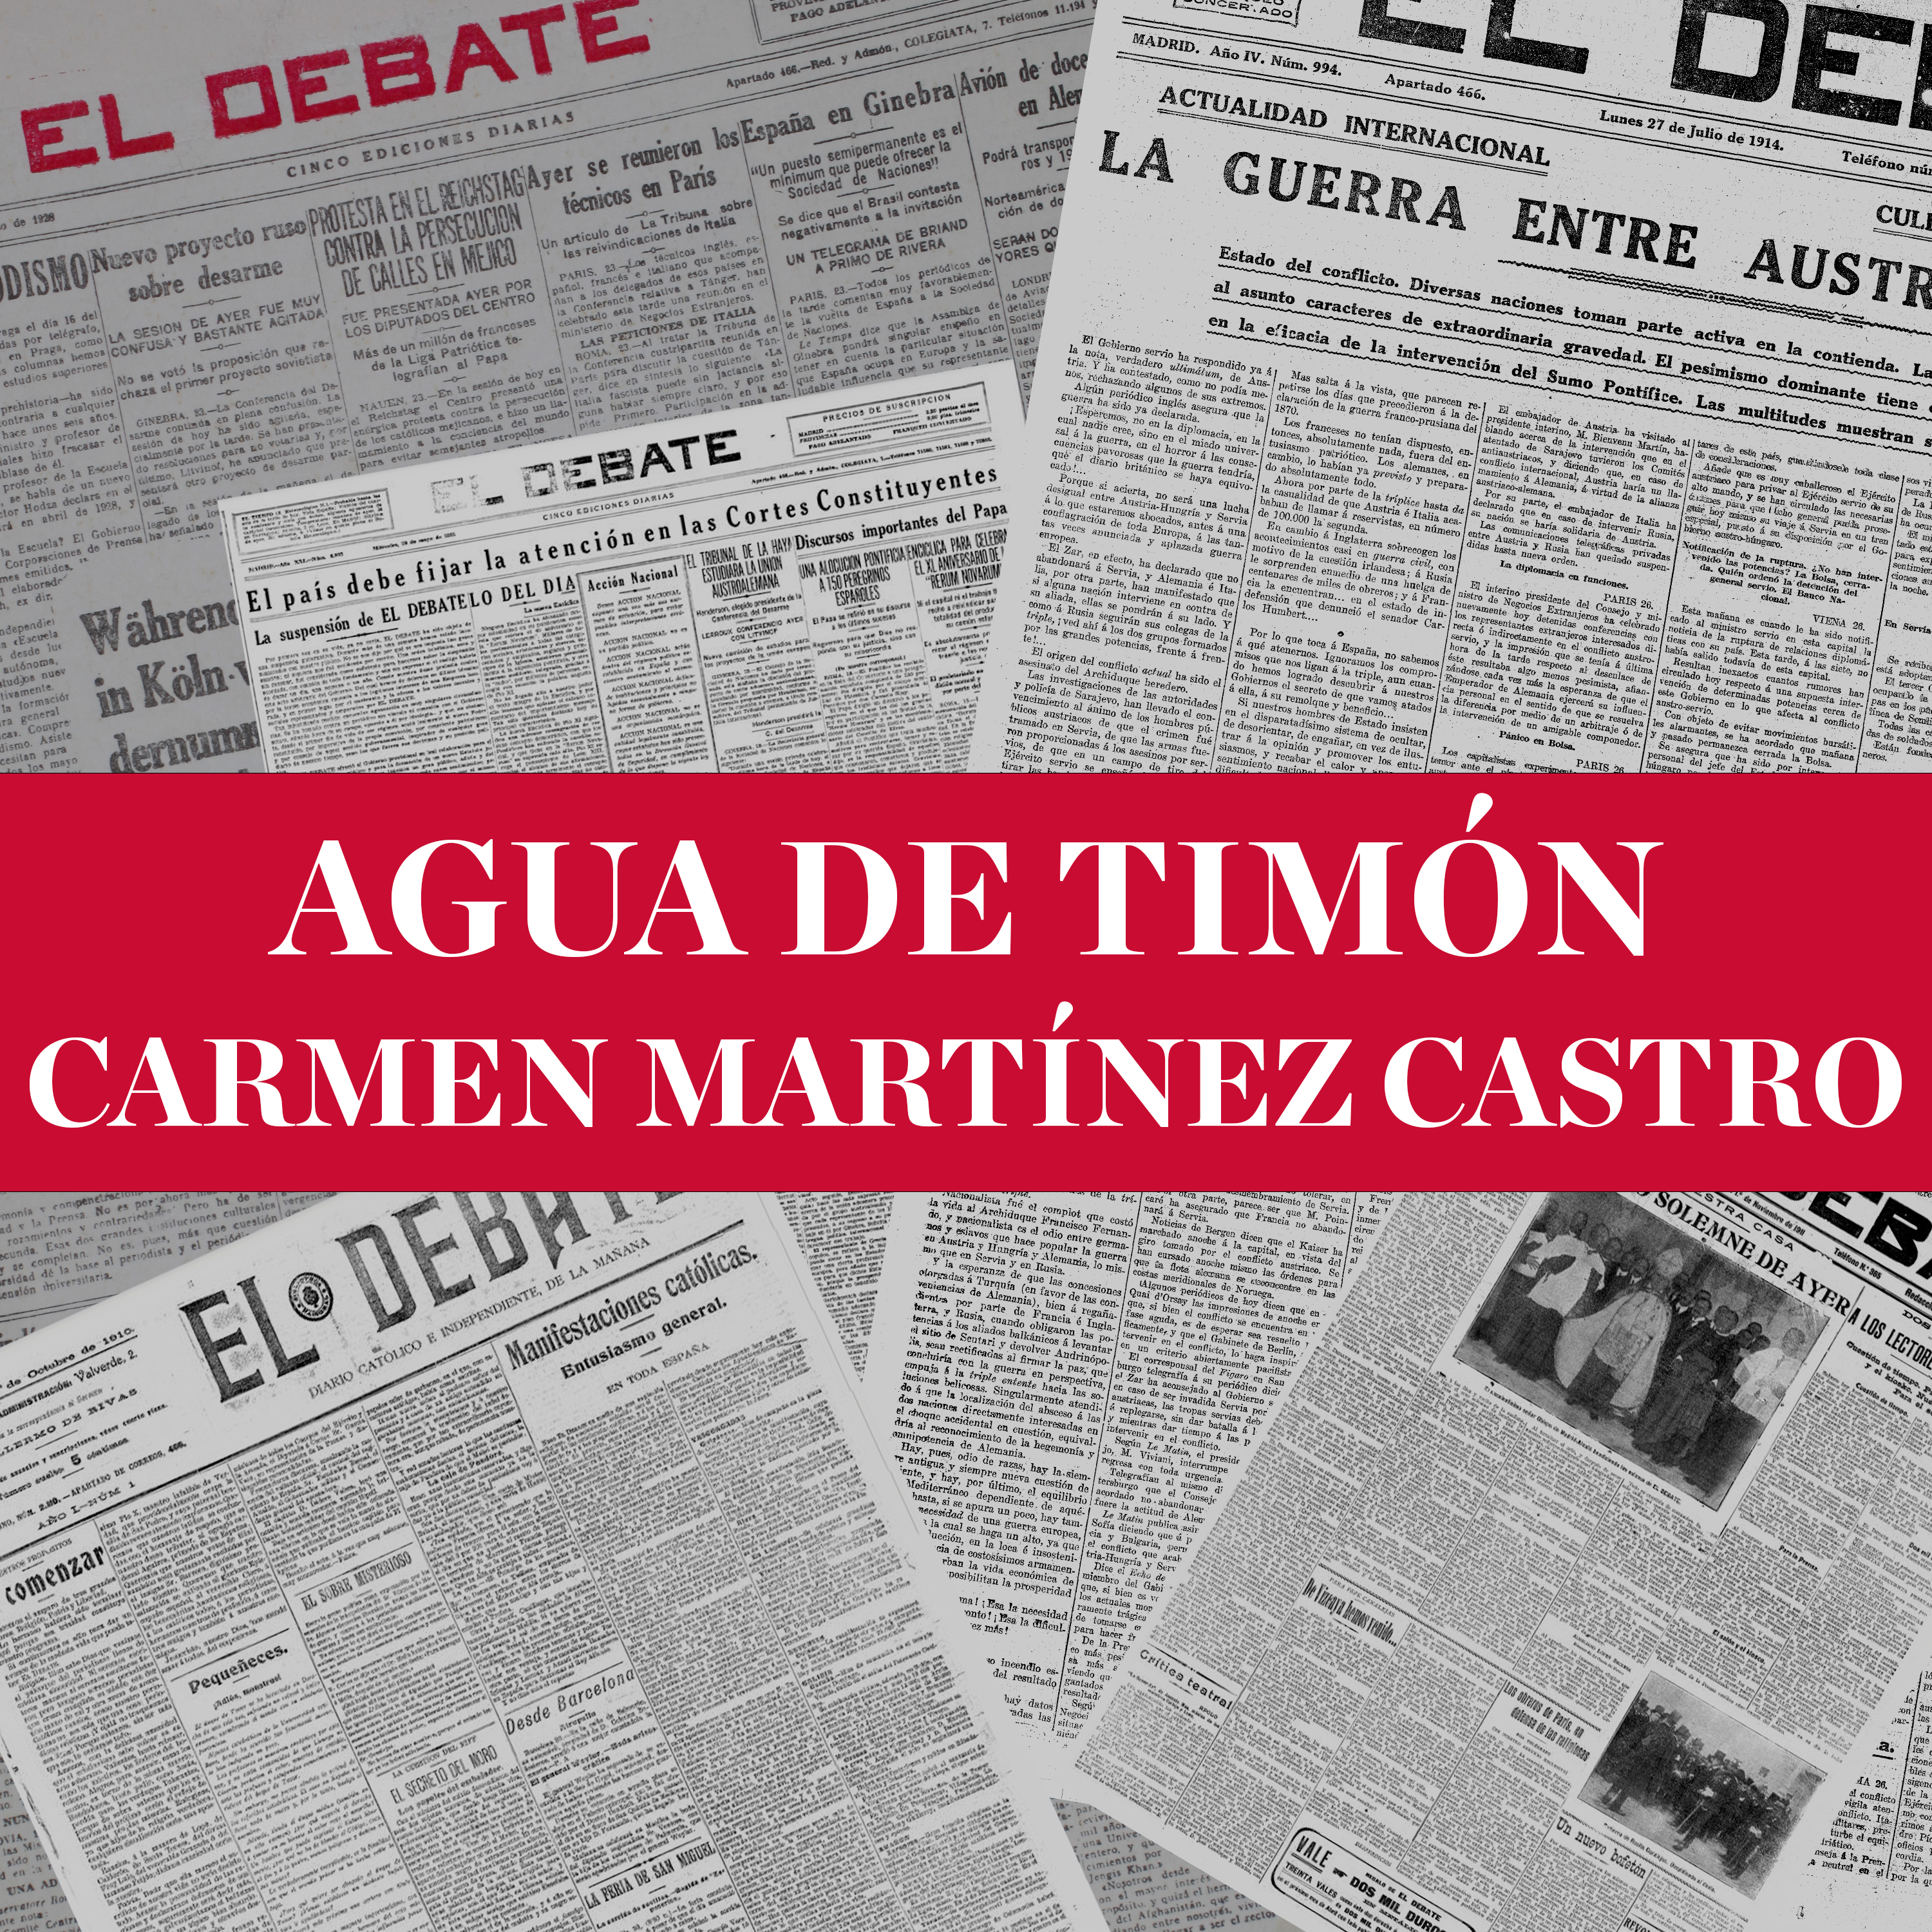 Agua de timón - Carmen Martínez Castro (05/06/22)